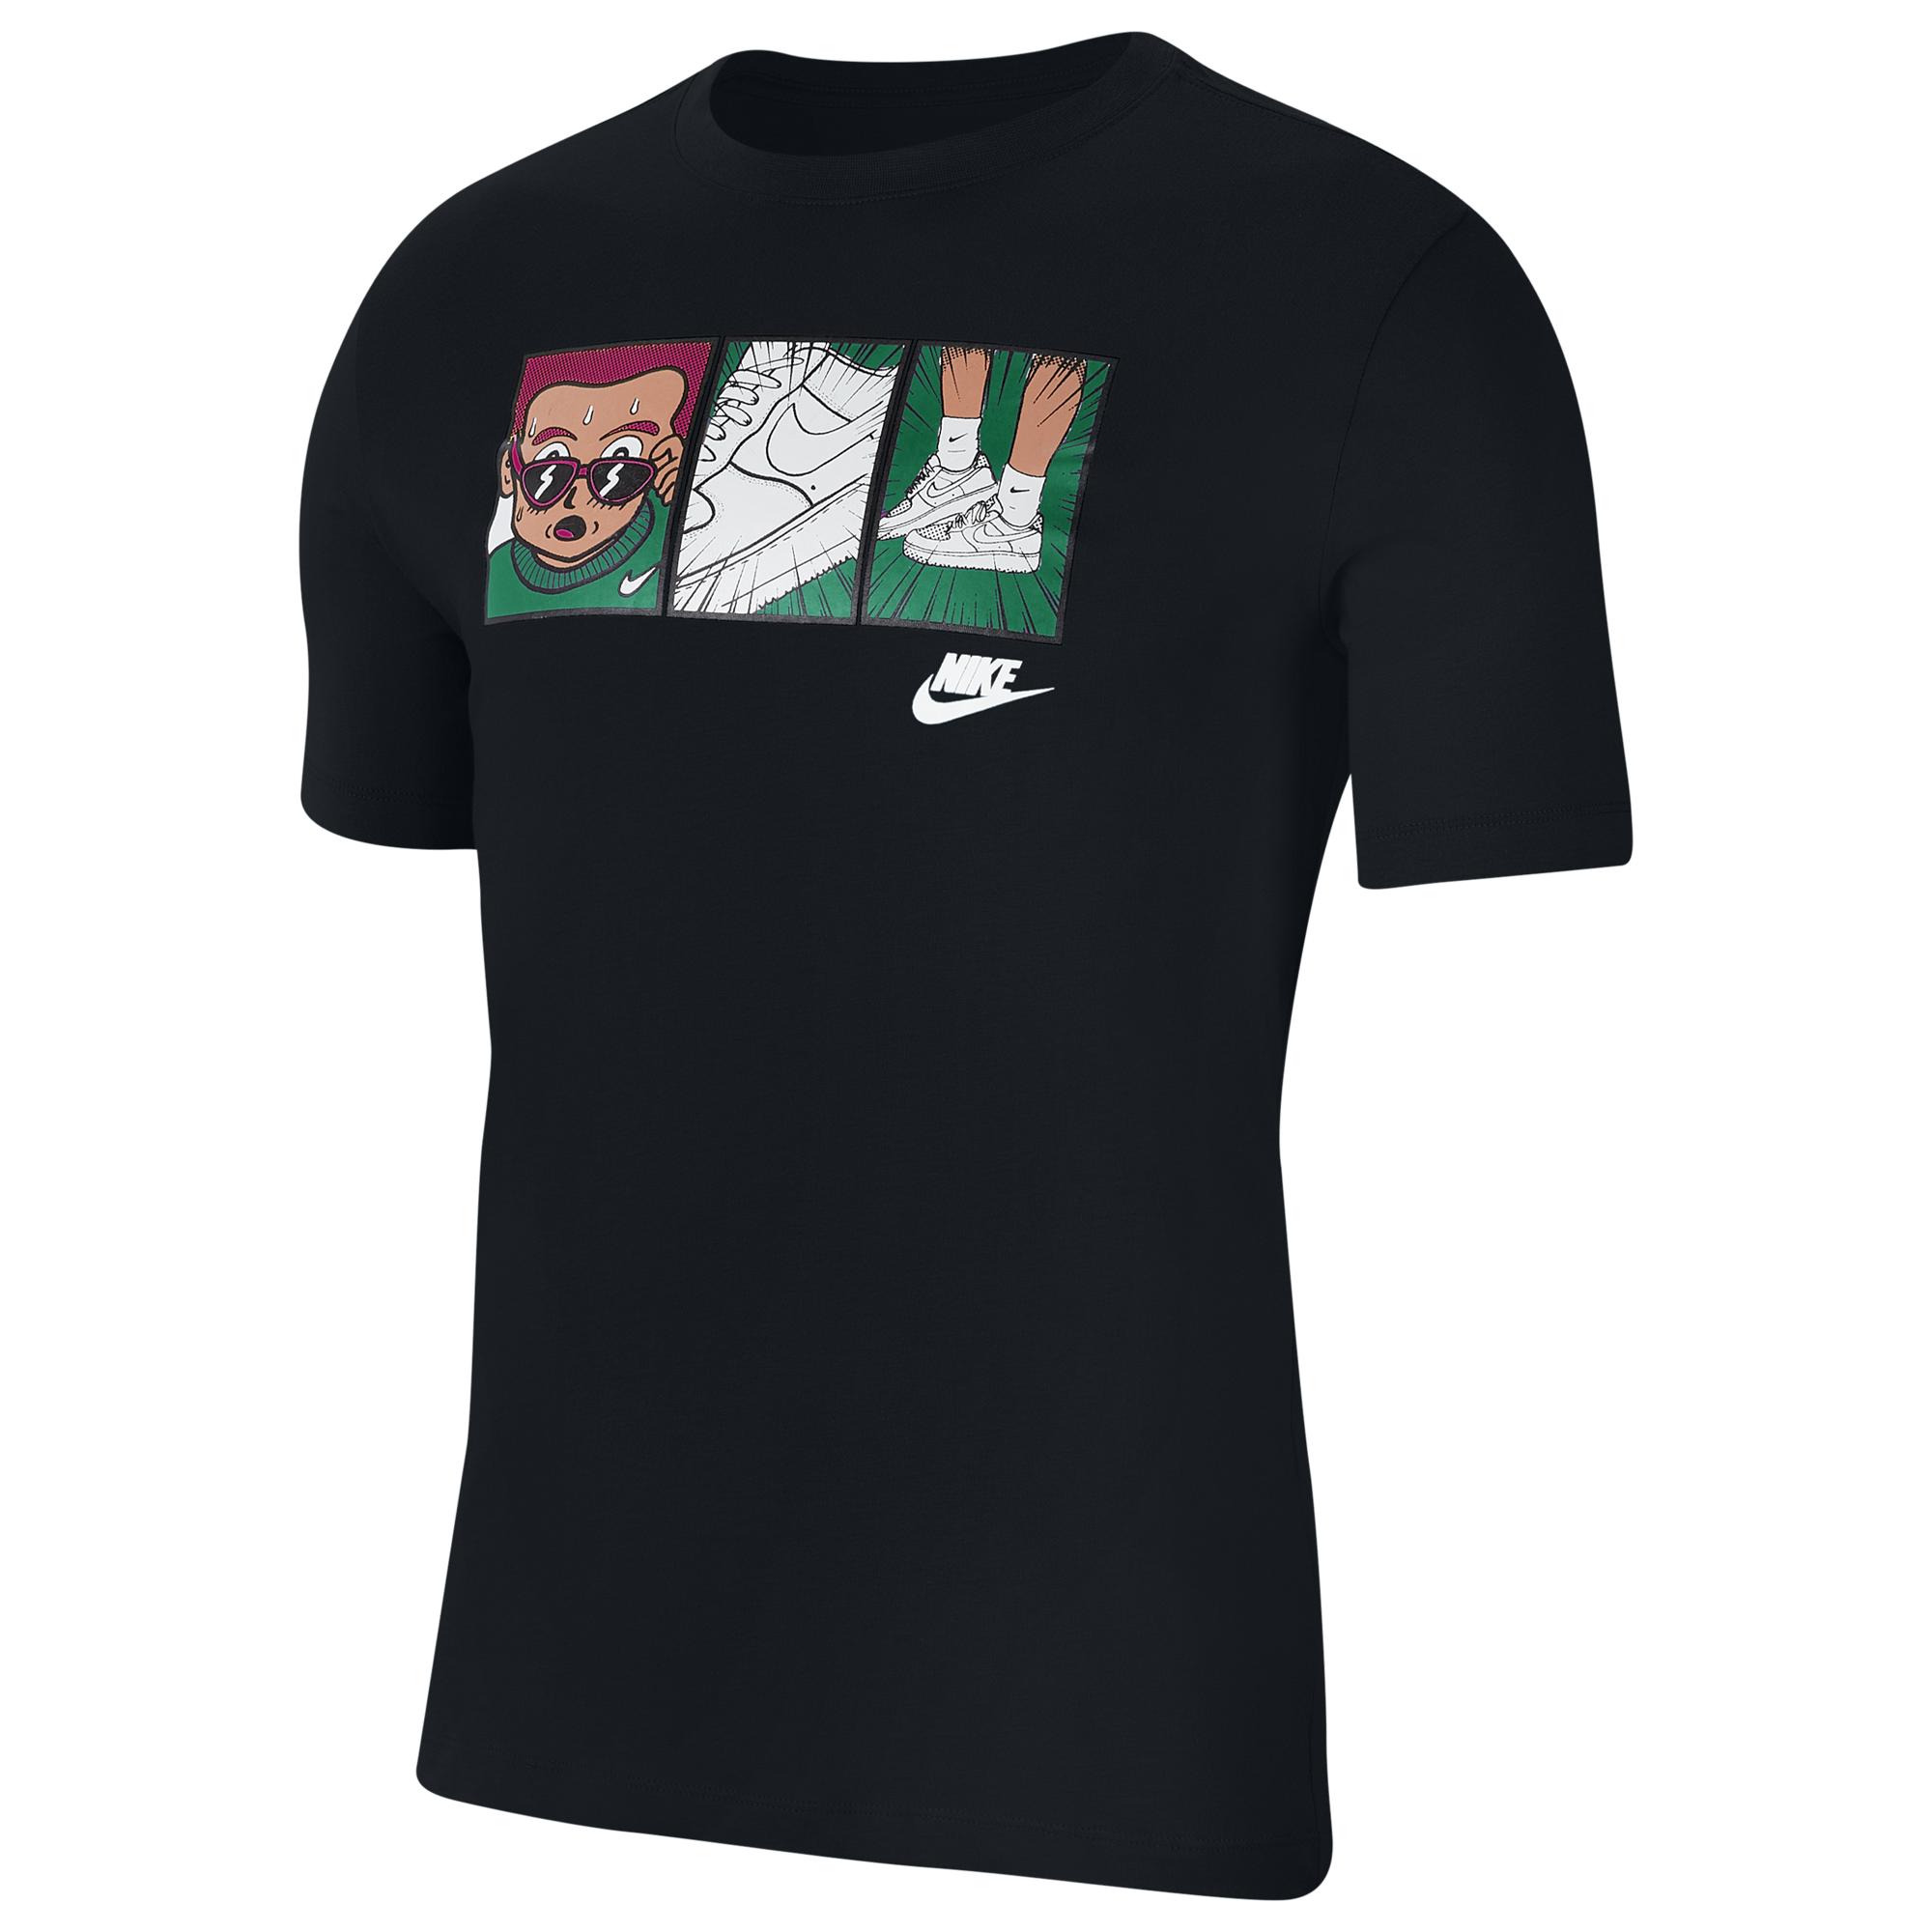 Nike Cotton Af1 Cartoon T-shirt in Black for Men - Lyst